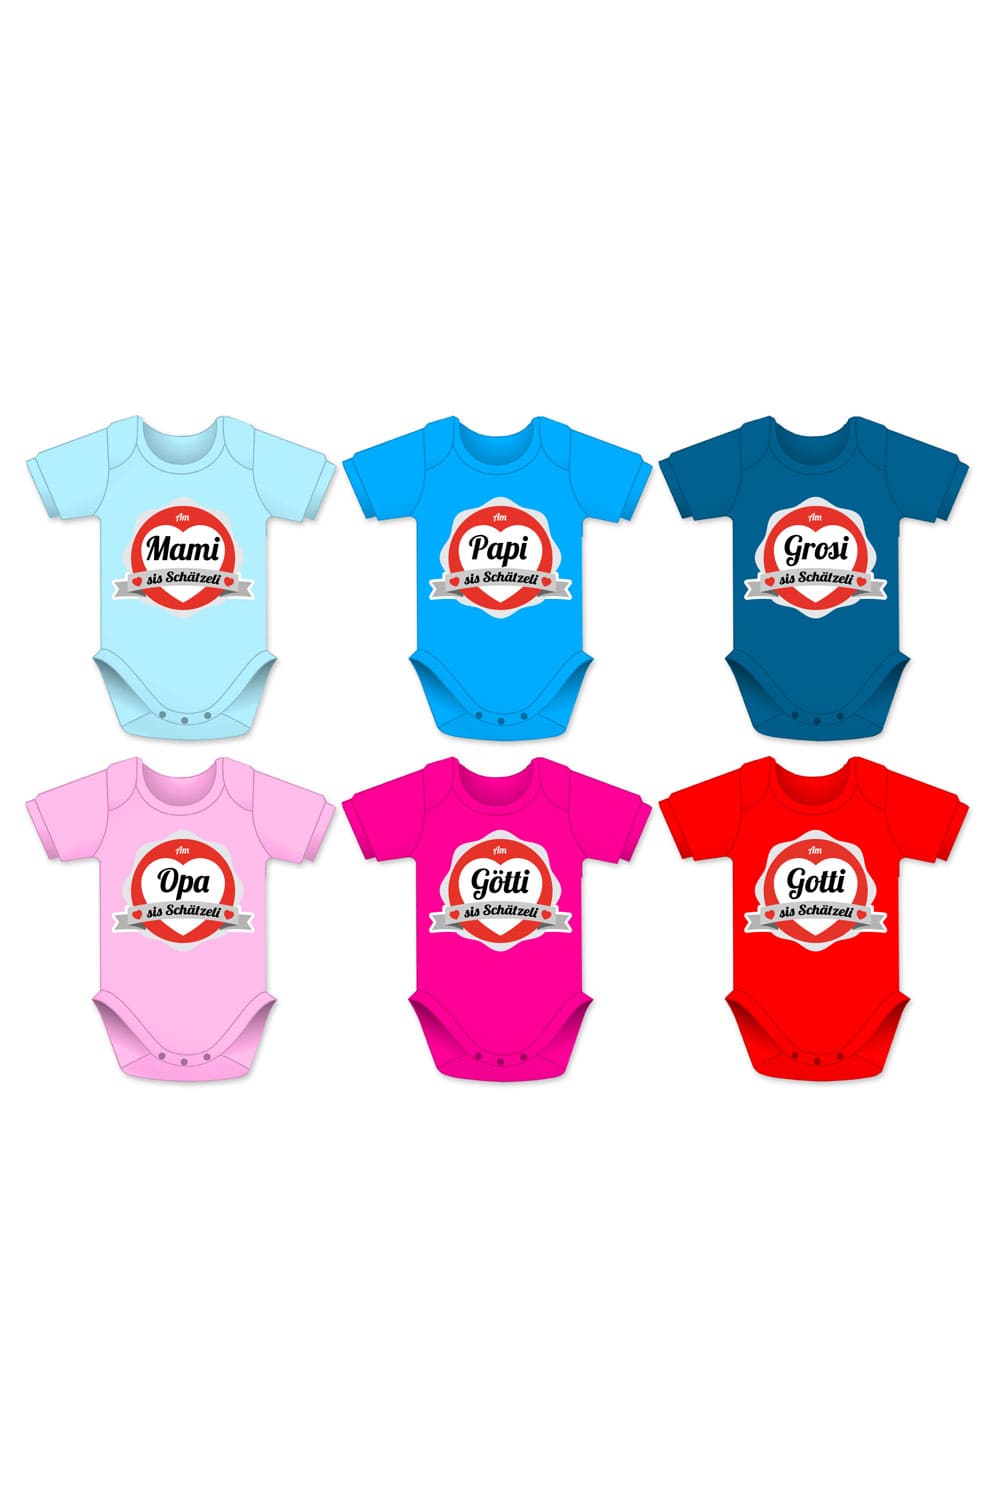 Schaetzeli babybodies in diversen Farben und Groessen